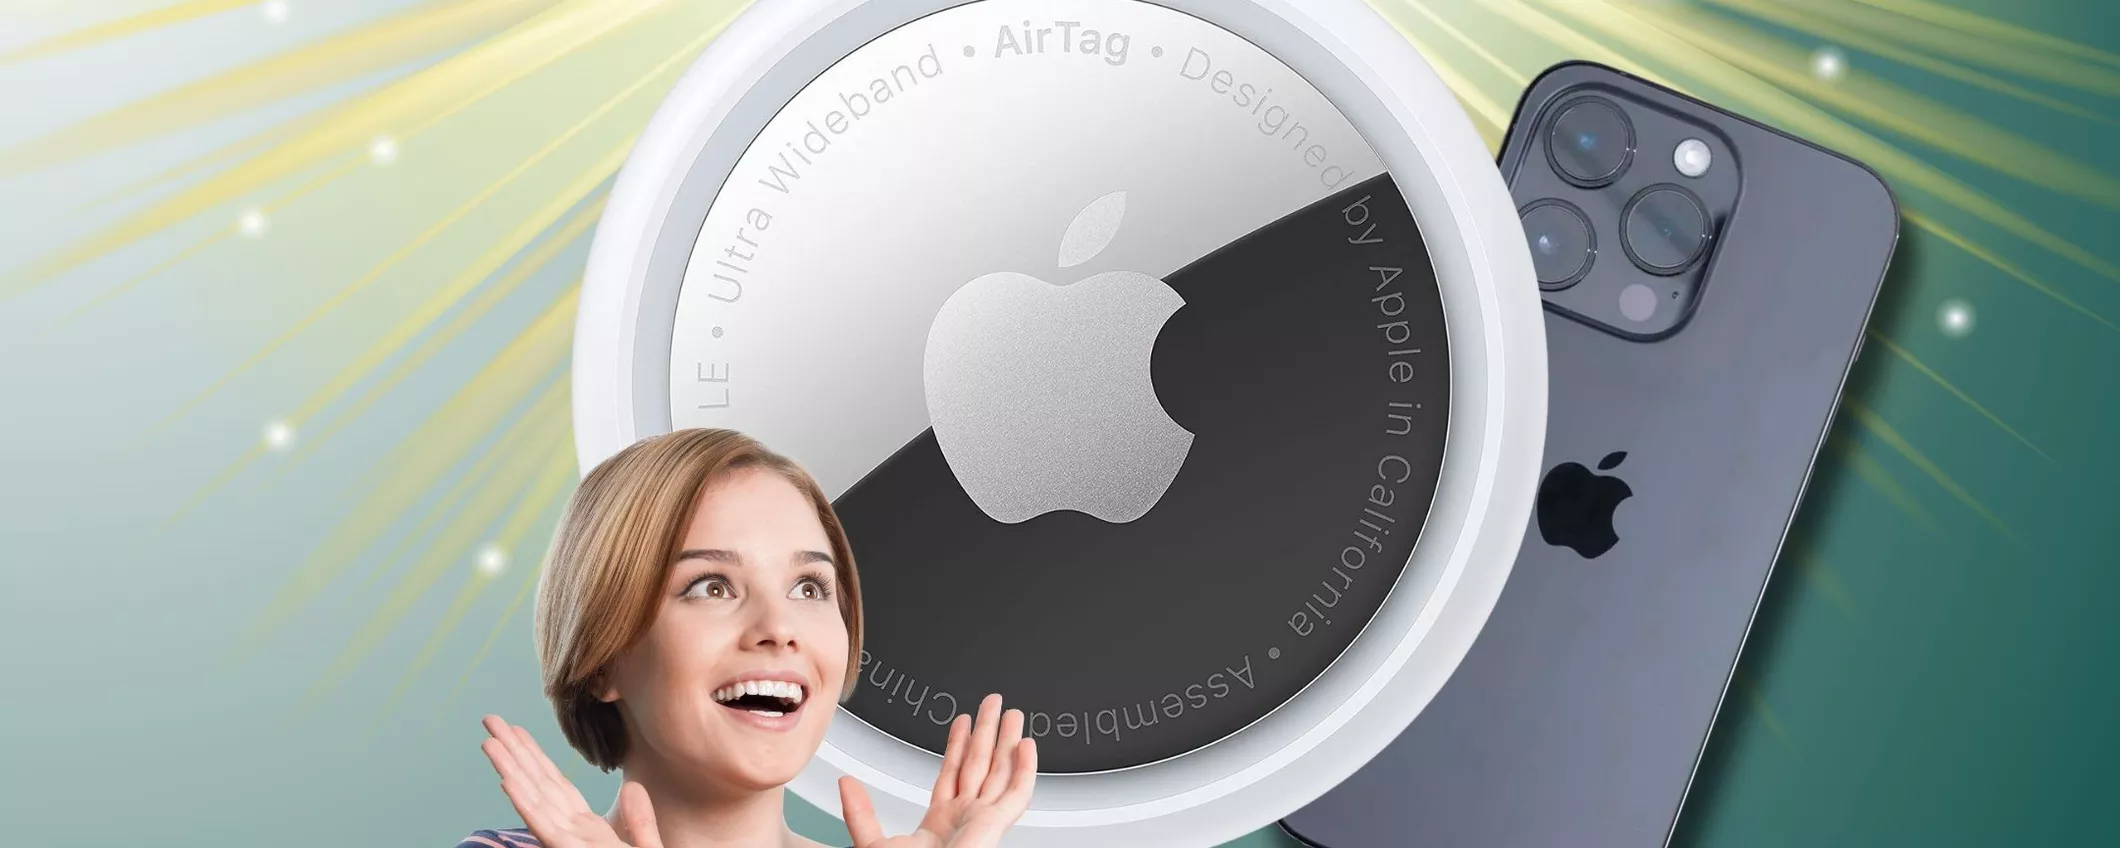 SICUREZZA IN GIRO? con Apple AirTag in sconto non perderai nulla!